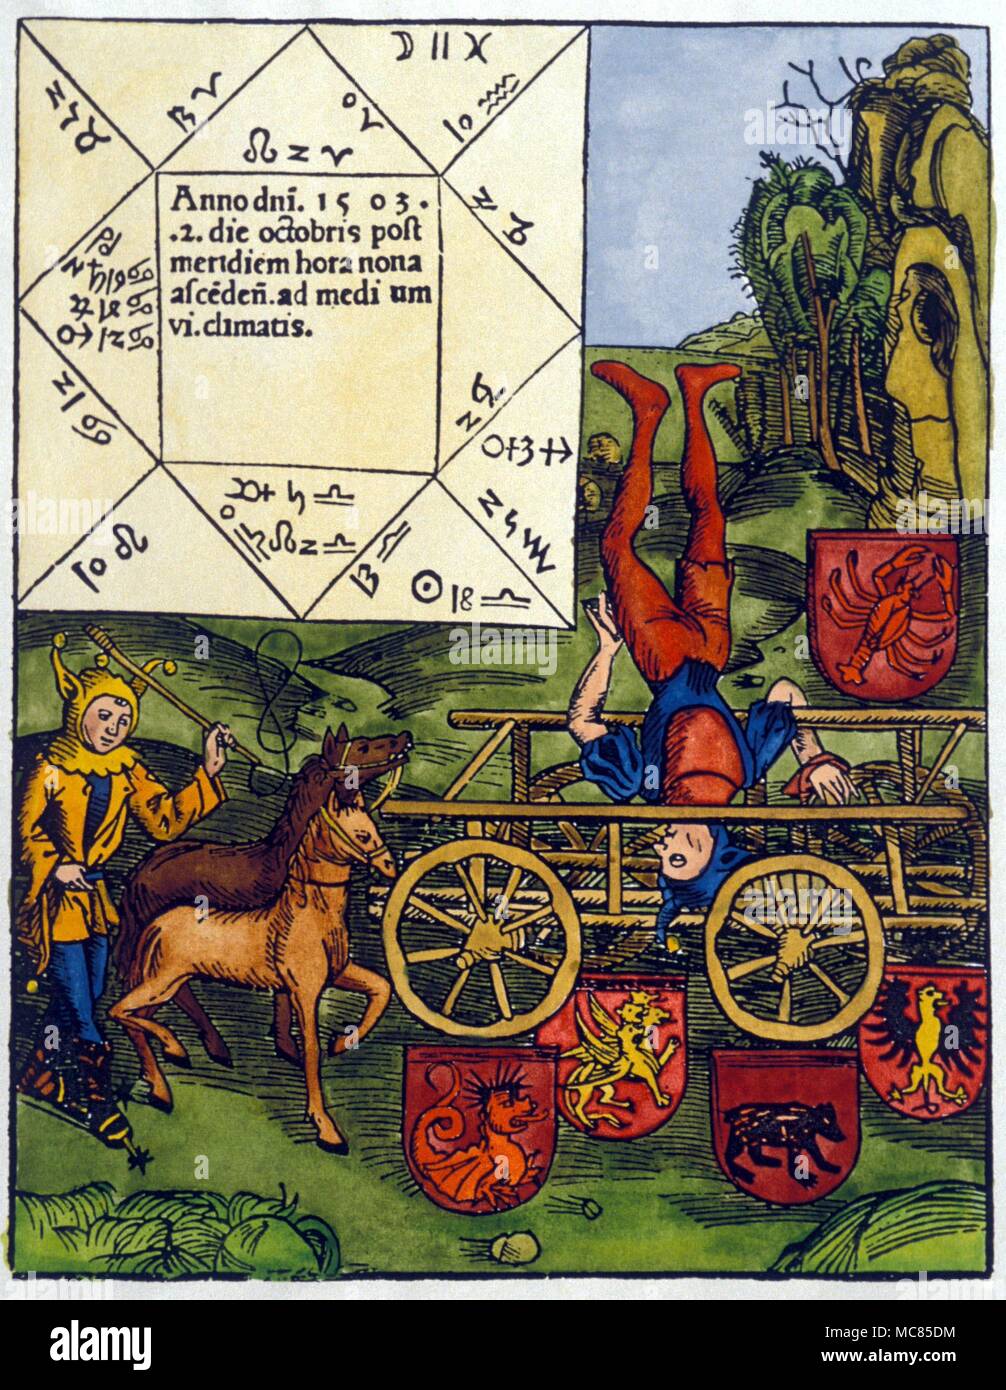 Oroscopo cast per il 2 ottobre 1503 con grand congiunzione di pianeti in Cancro. Xilografia di 1503. Uno dei clown sta facendo un trucco di bilanciamento, ma è difficile riuscire a vedere che cosa ha a che fare con l'oroscopo. Foto Stock